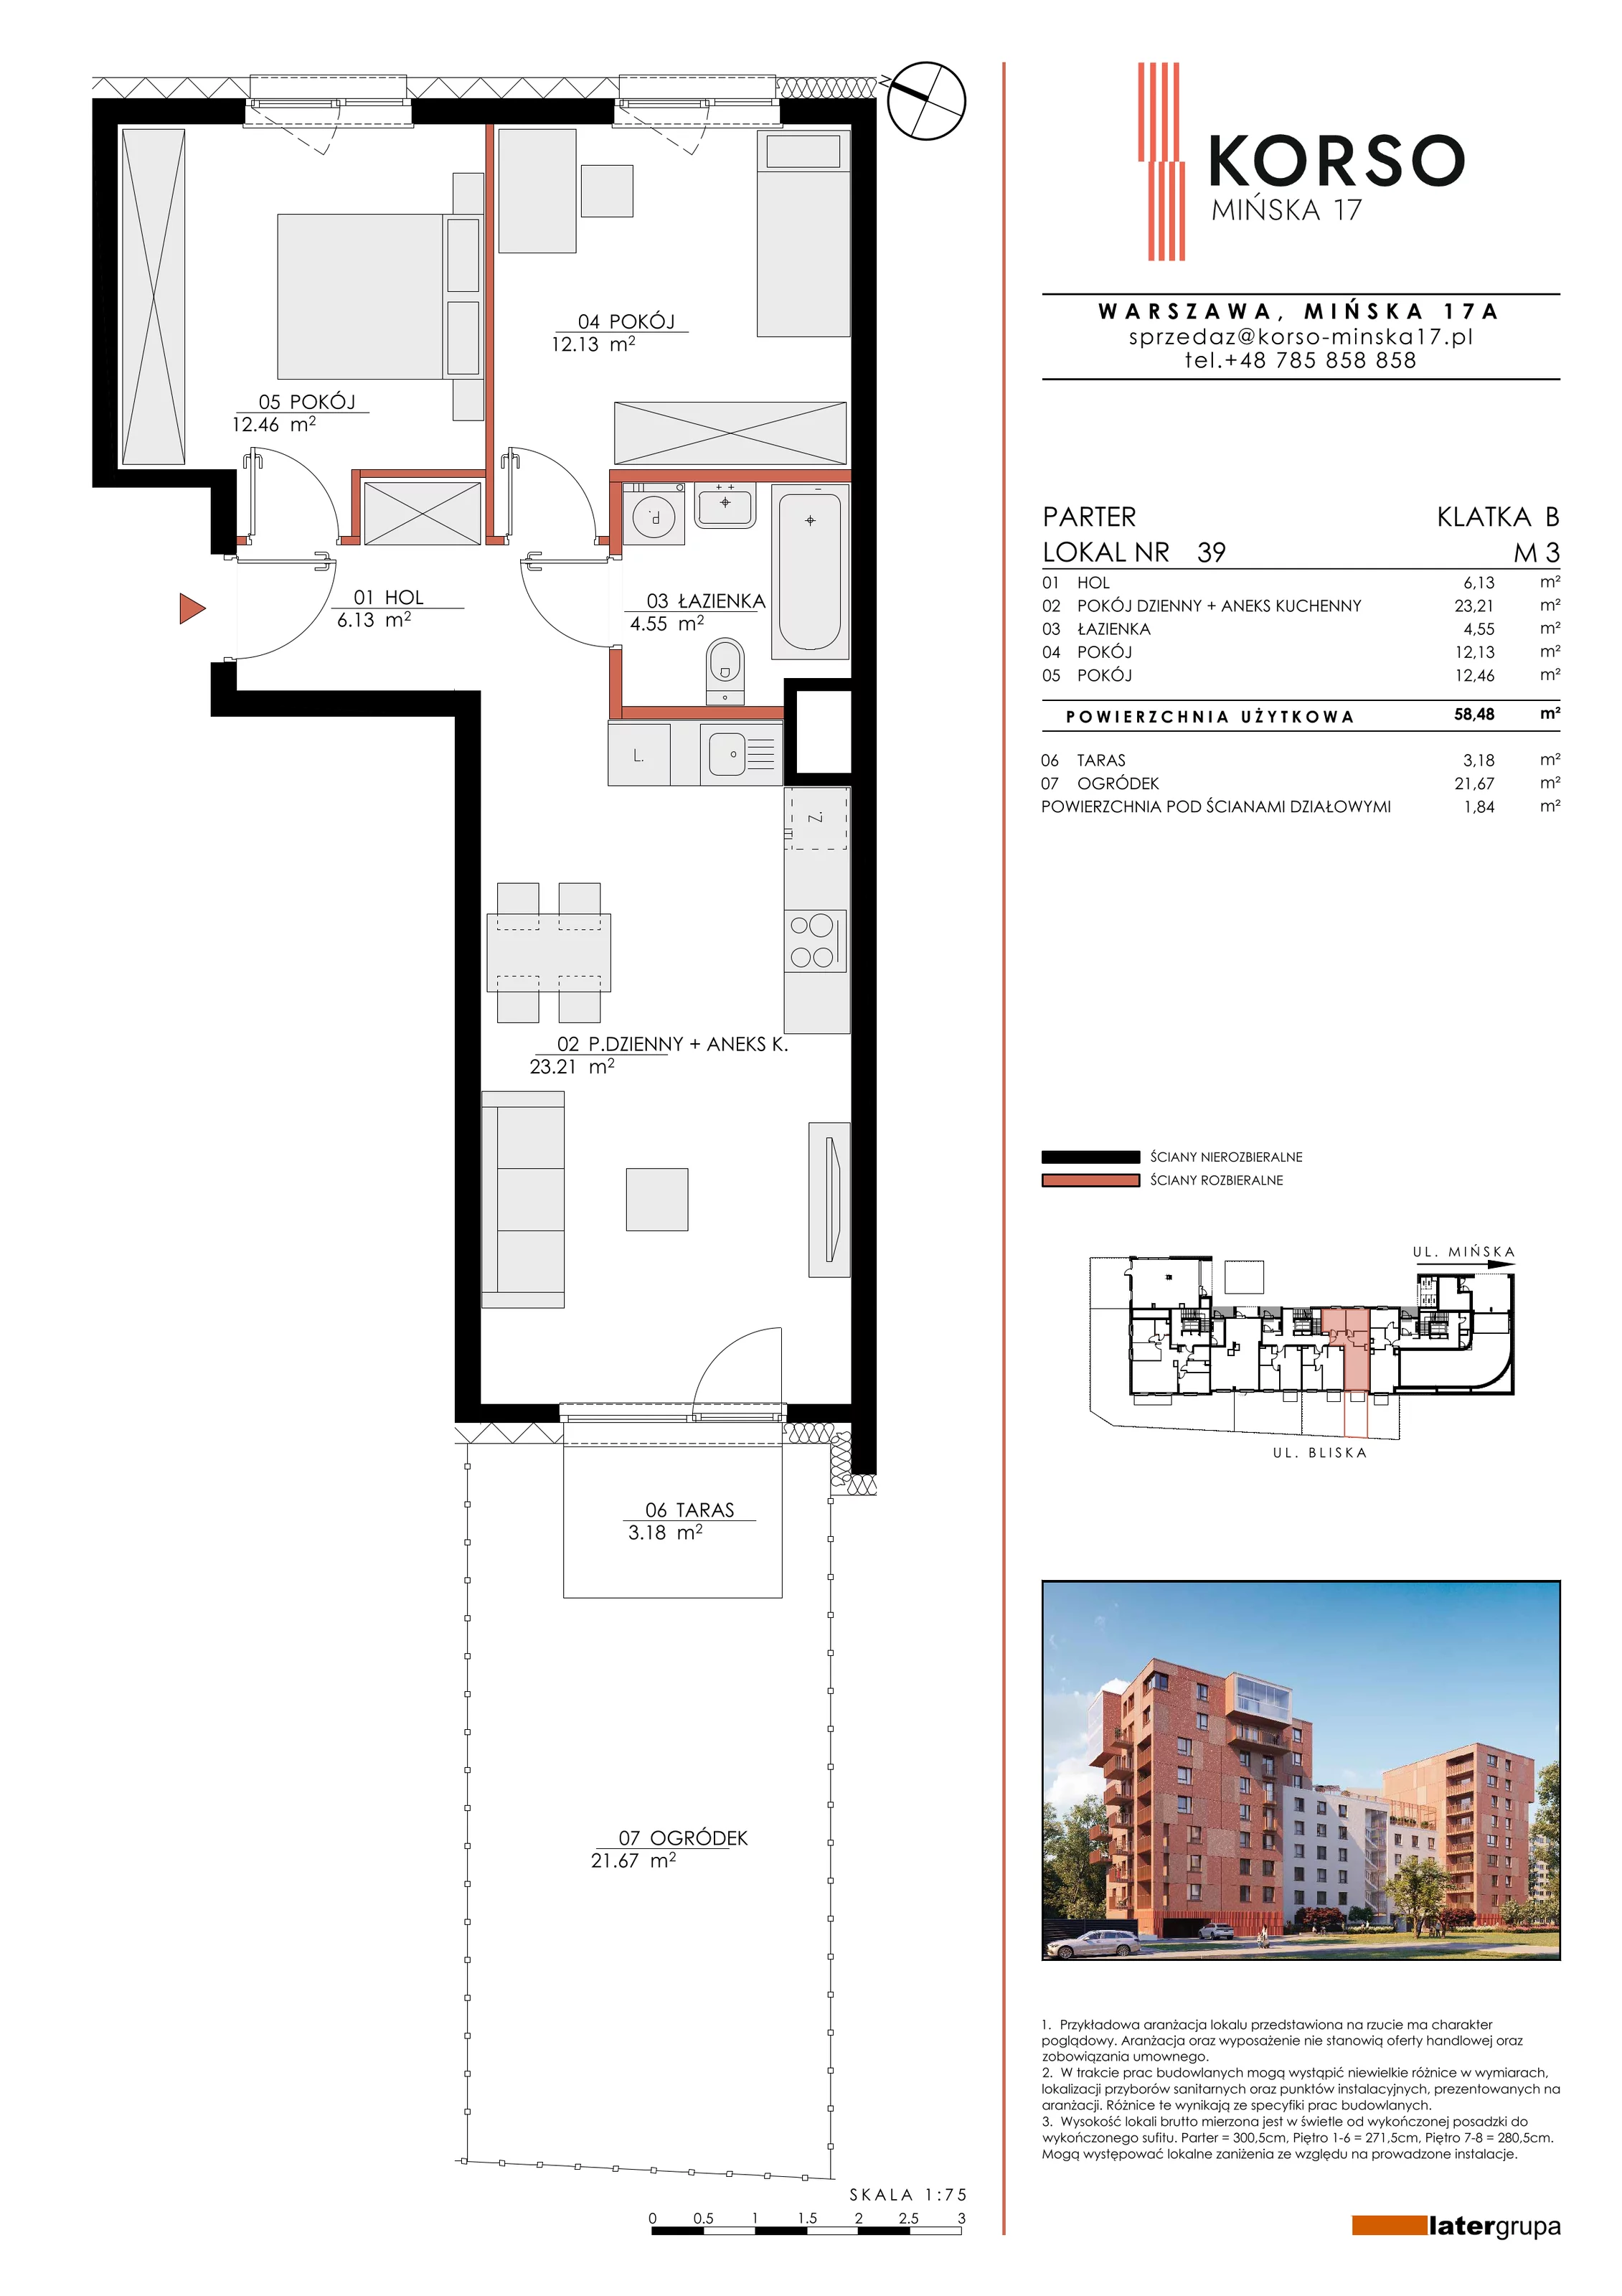 Mieszkanie 58,48 m², parter, oferta nr 39, KORSO Mińska 17, Warszawa, Praga Południe, Kamionek, ul. Mińska 17